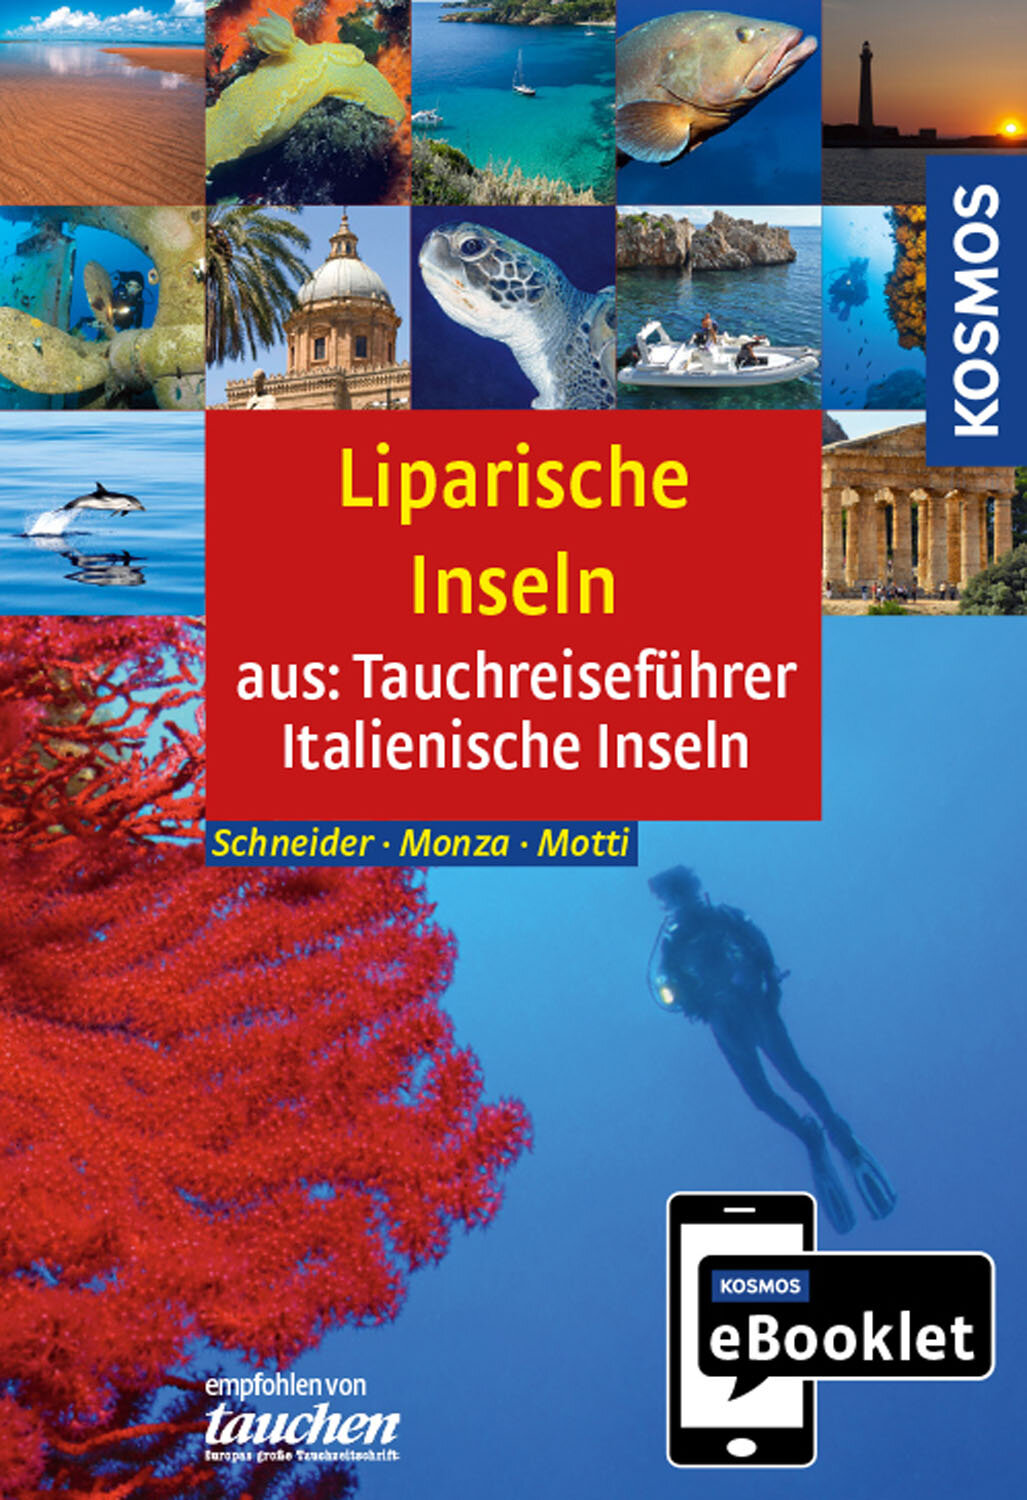 KOSMOS eBooklet: Tauchreiseführer Äolische Inseln